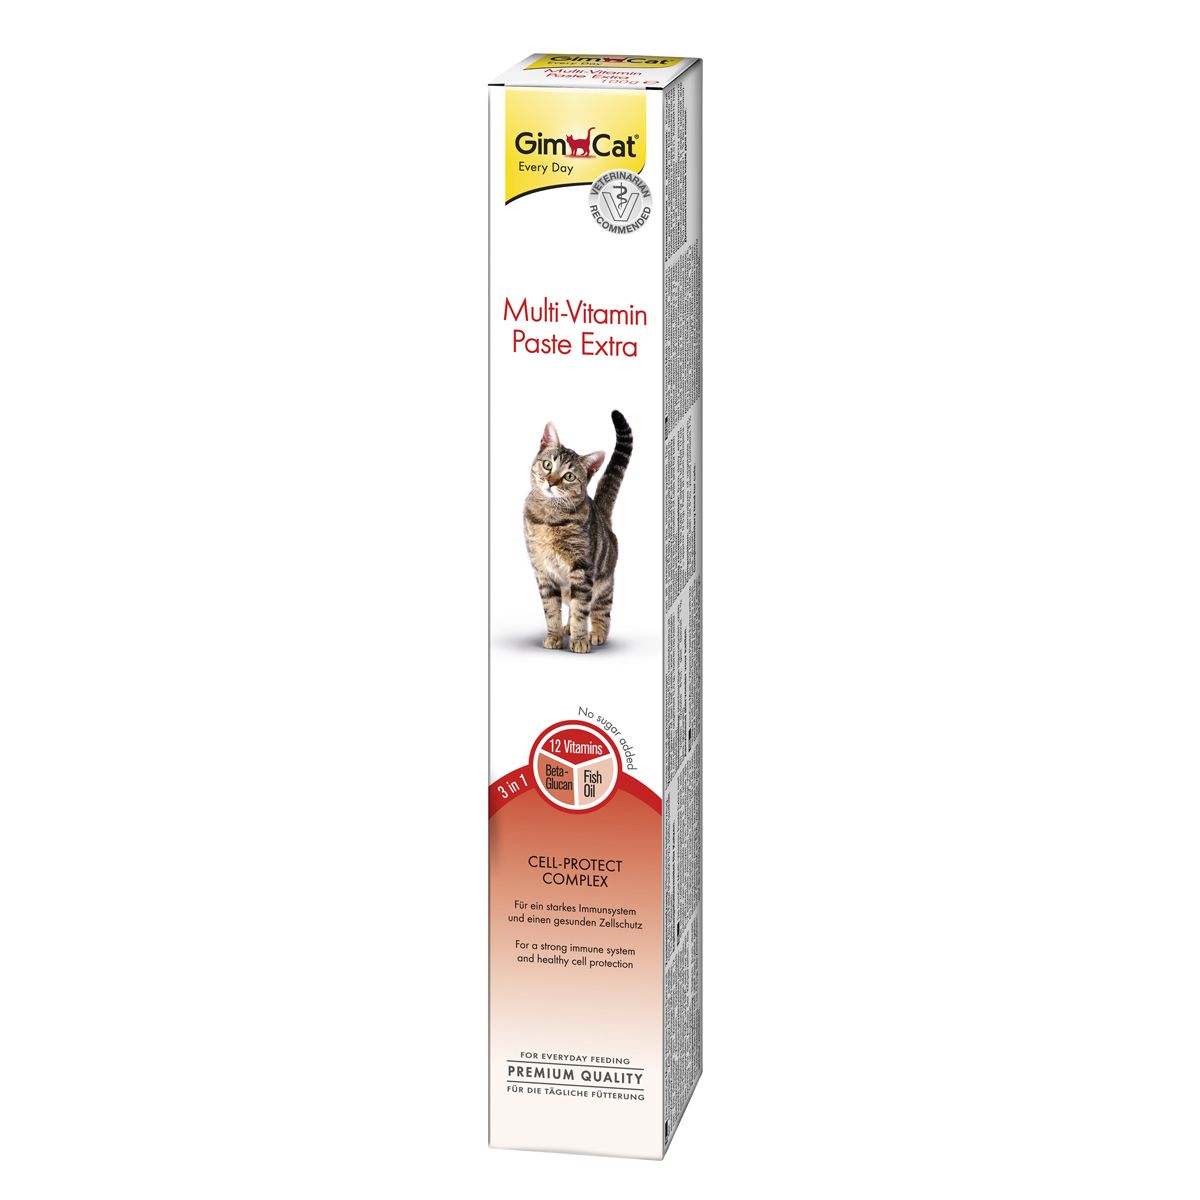 Хорошая паста для кошек. Мультивитаминная паста для кошек GIMCAT. Паста для вывода шерсти для кошек GIMCAT. Beaphar паста для вывода шерсти для кошек 100г. GIMCAT Multi-Vitamin paste Extra паста для кошек 200г.